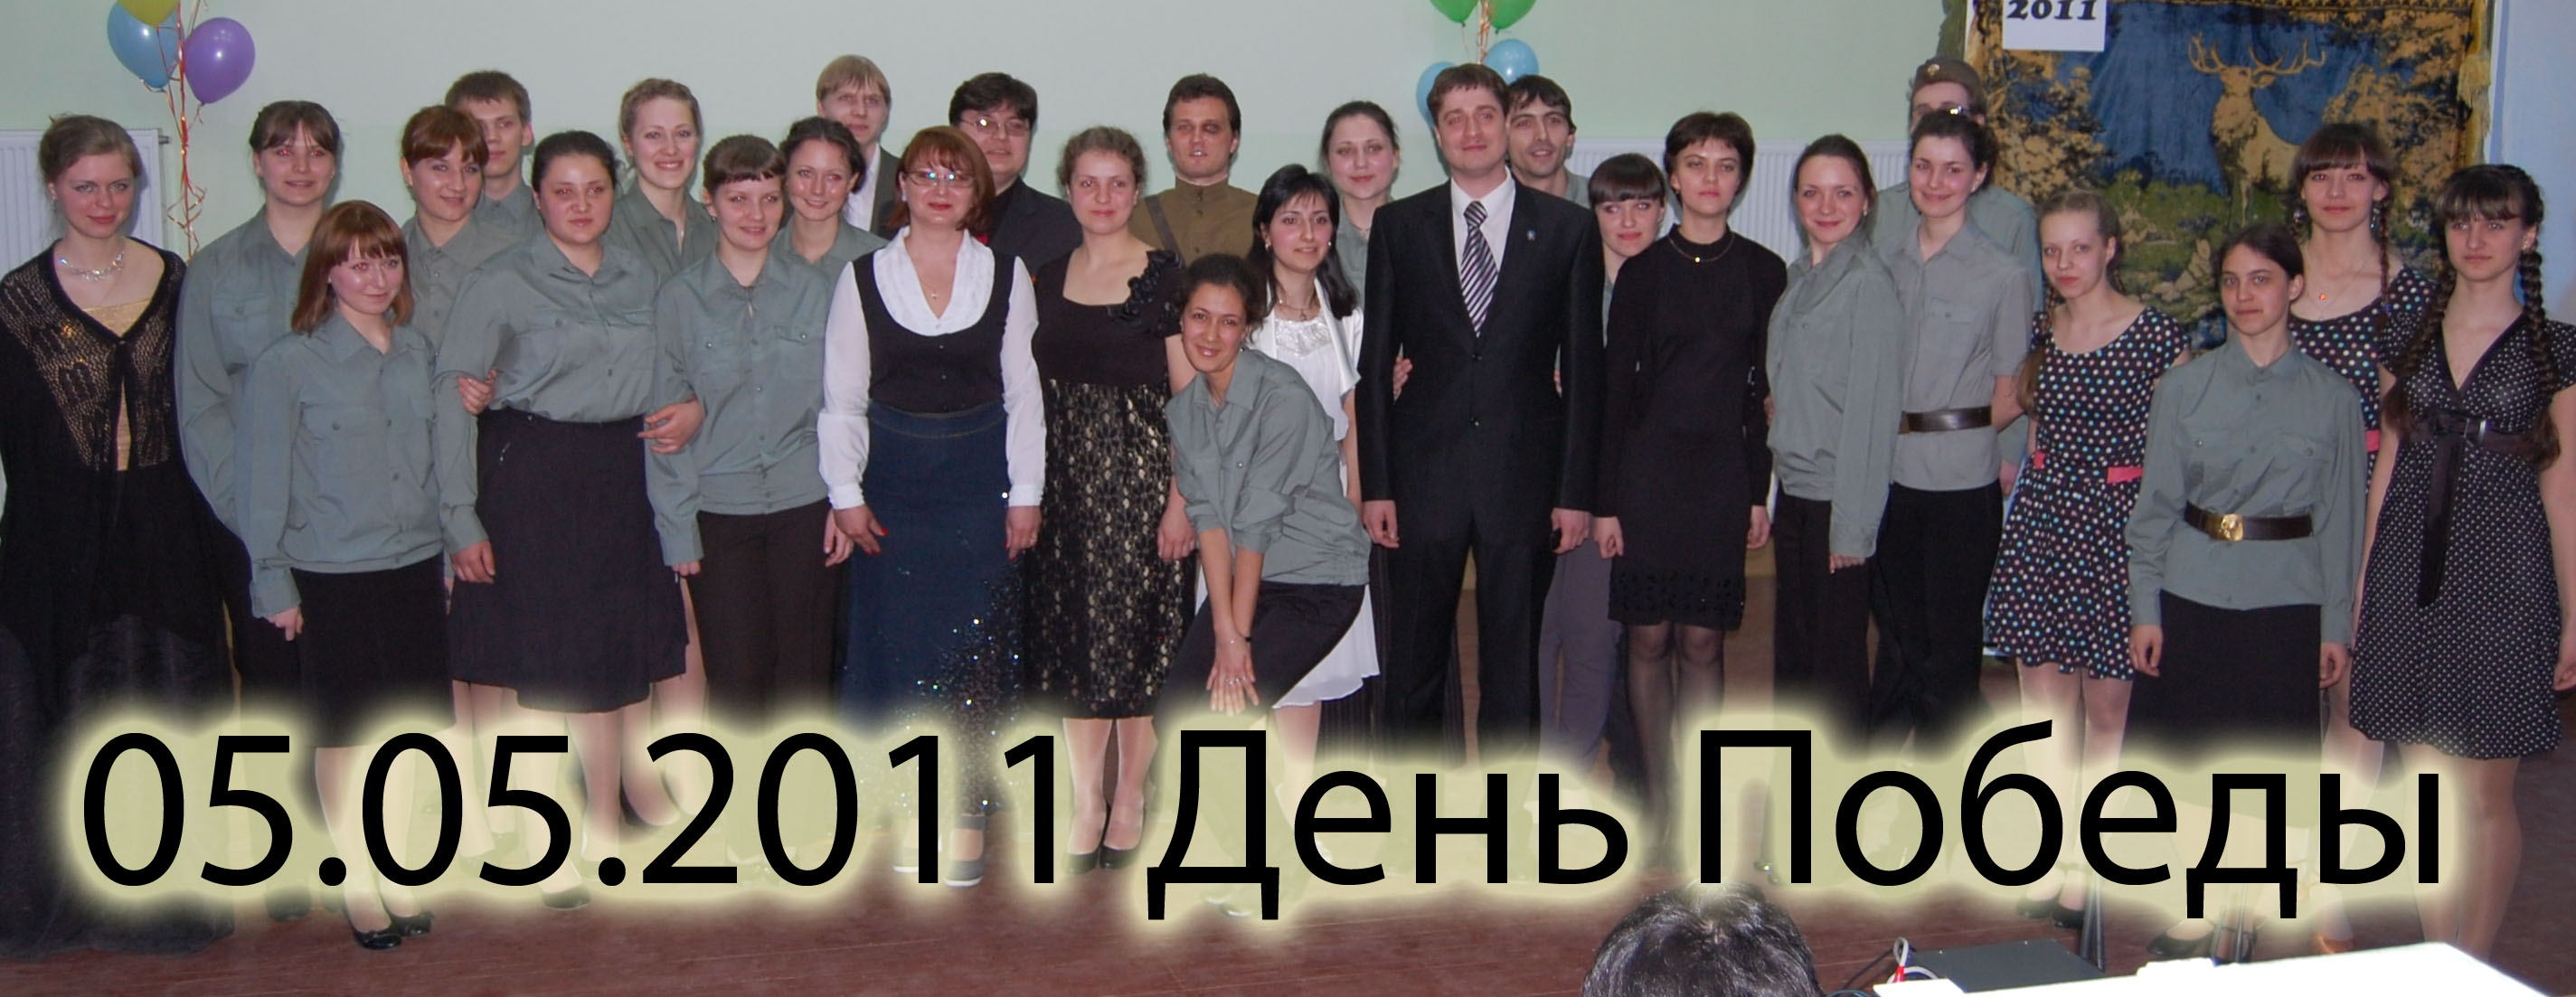 2011.05.05 День Победы